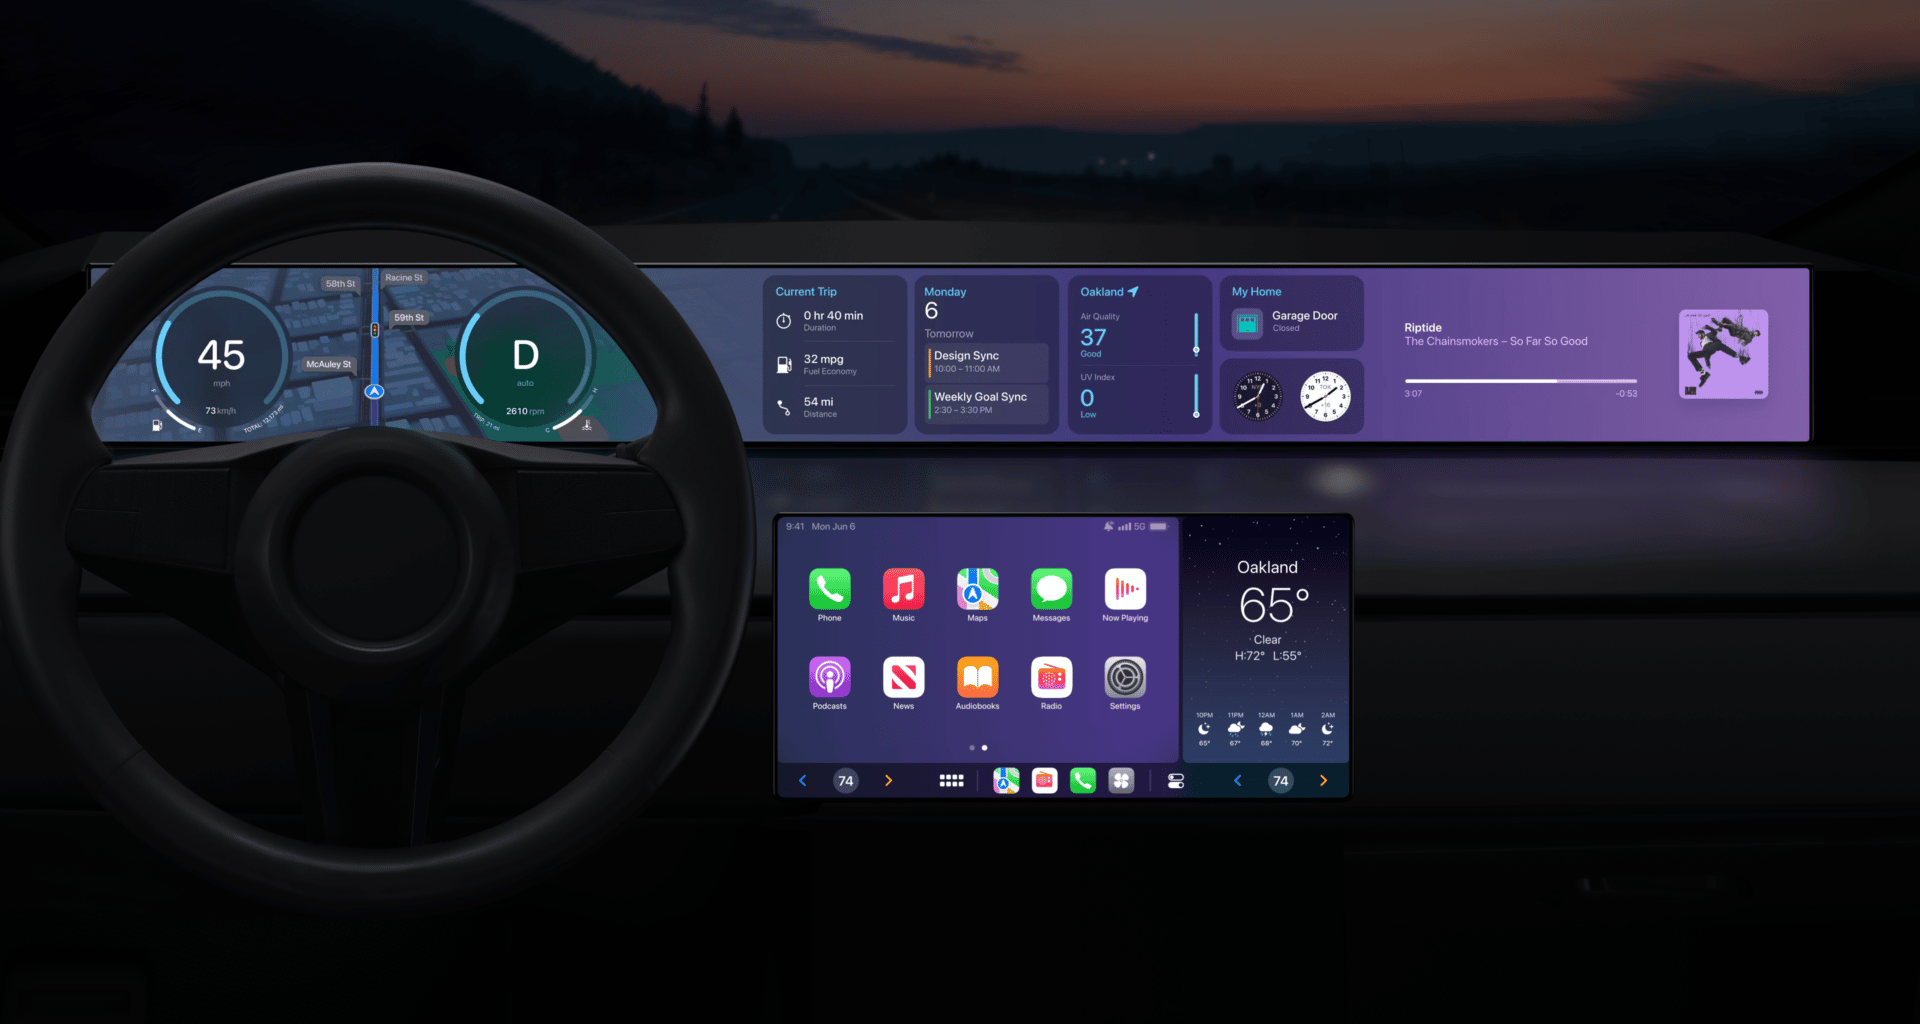 Interface multitelas do CarPlay no iOS 16